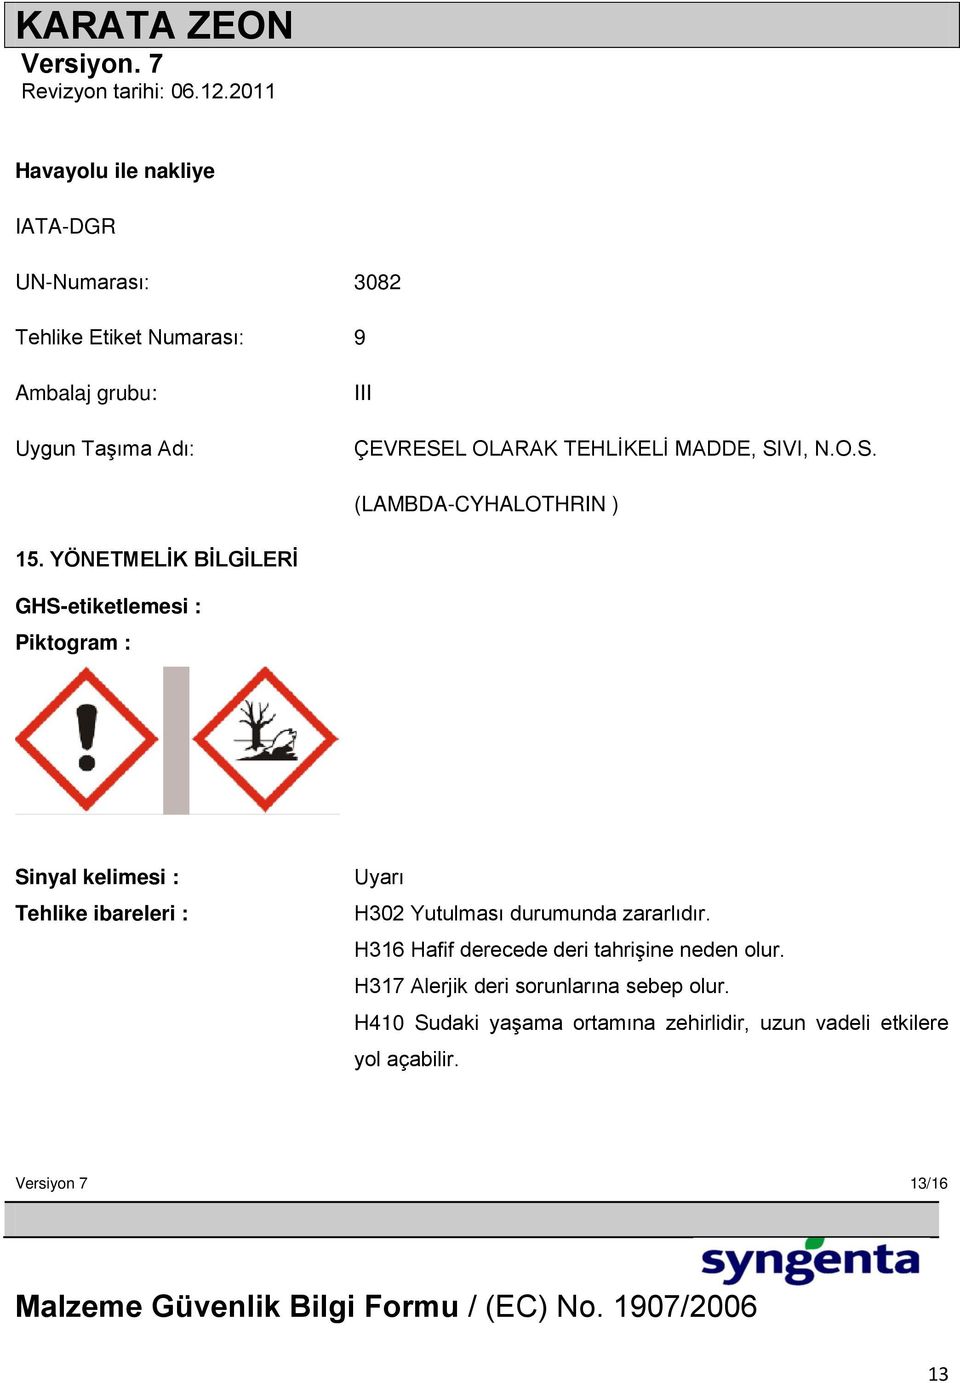 YÖNETMELĠK BĠLGĠLERĠ GHS-etiketlemesi : Piktogram : Sinyal kelimesi : Tehlike ibareleri : Uyarı H302 Yutulması durumunda zararlıdır.